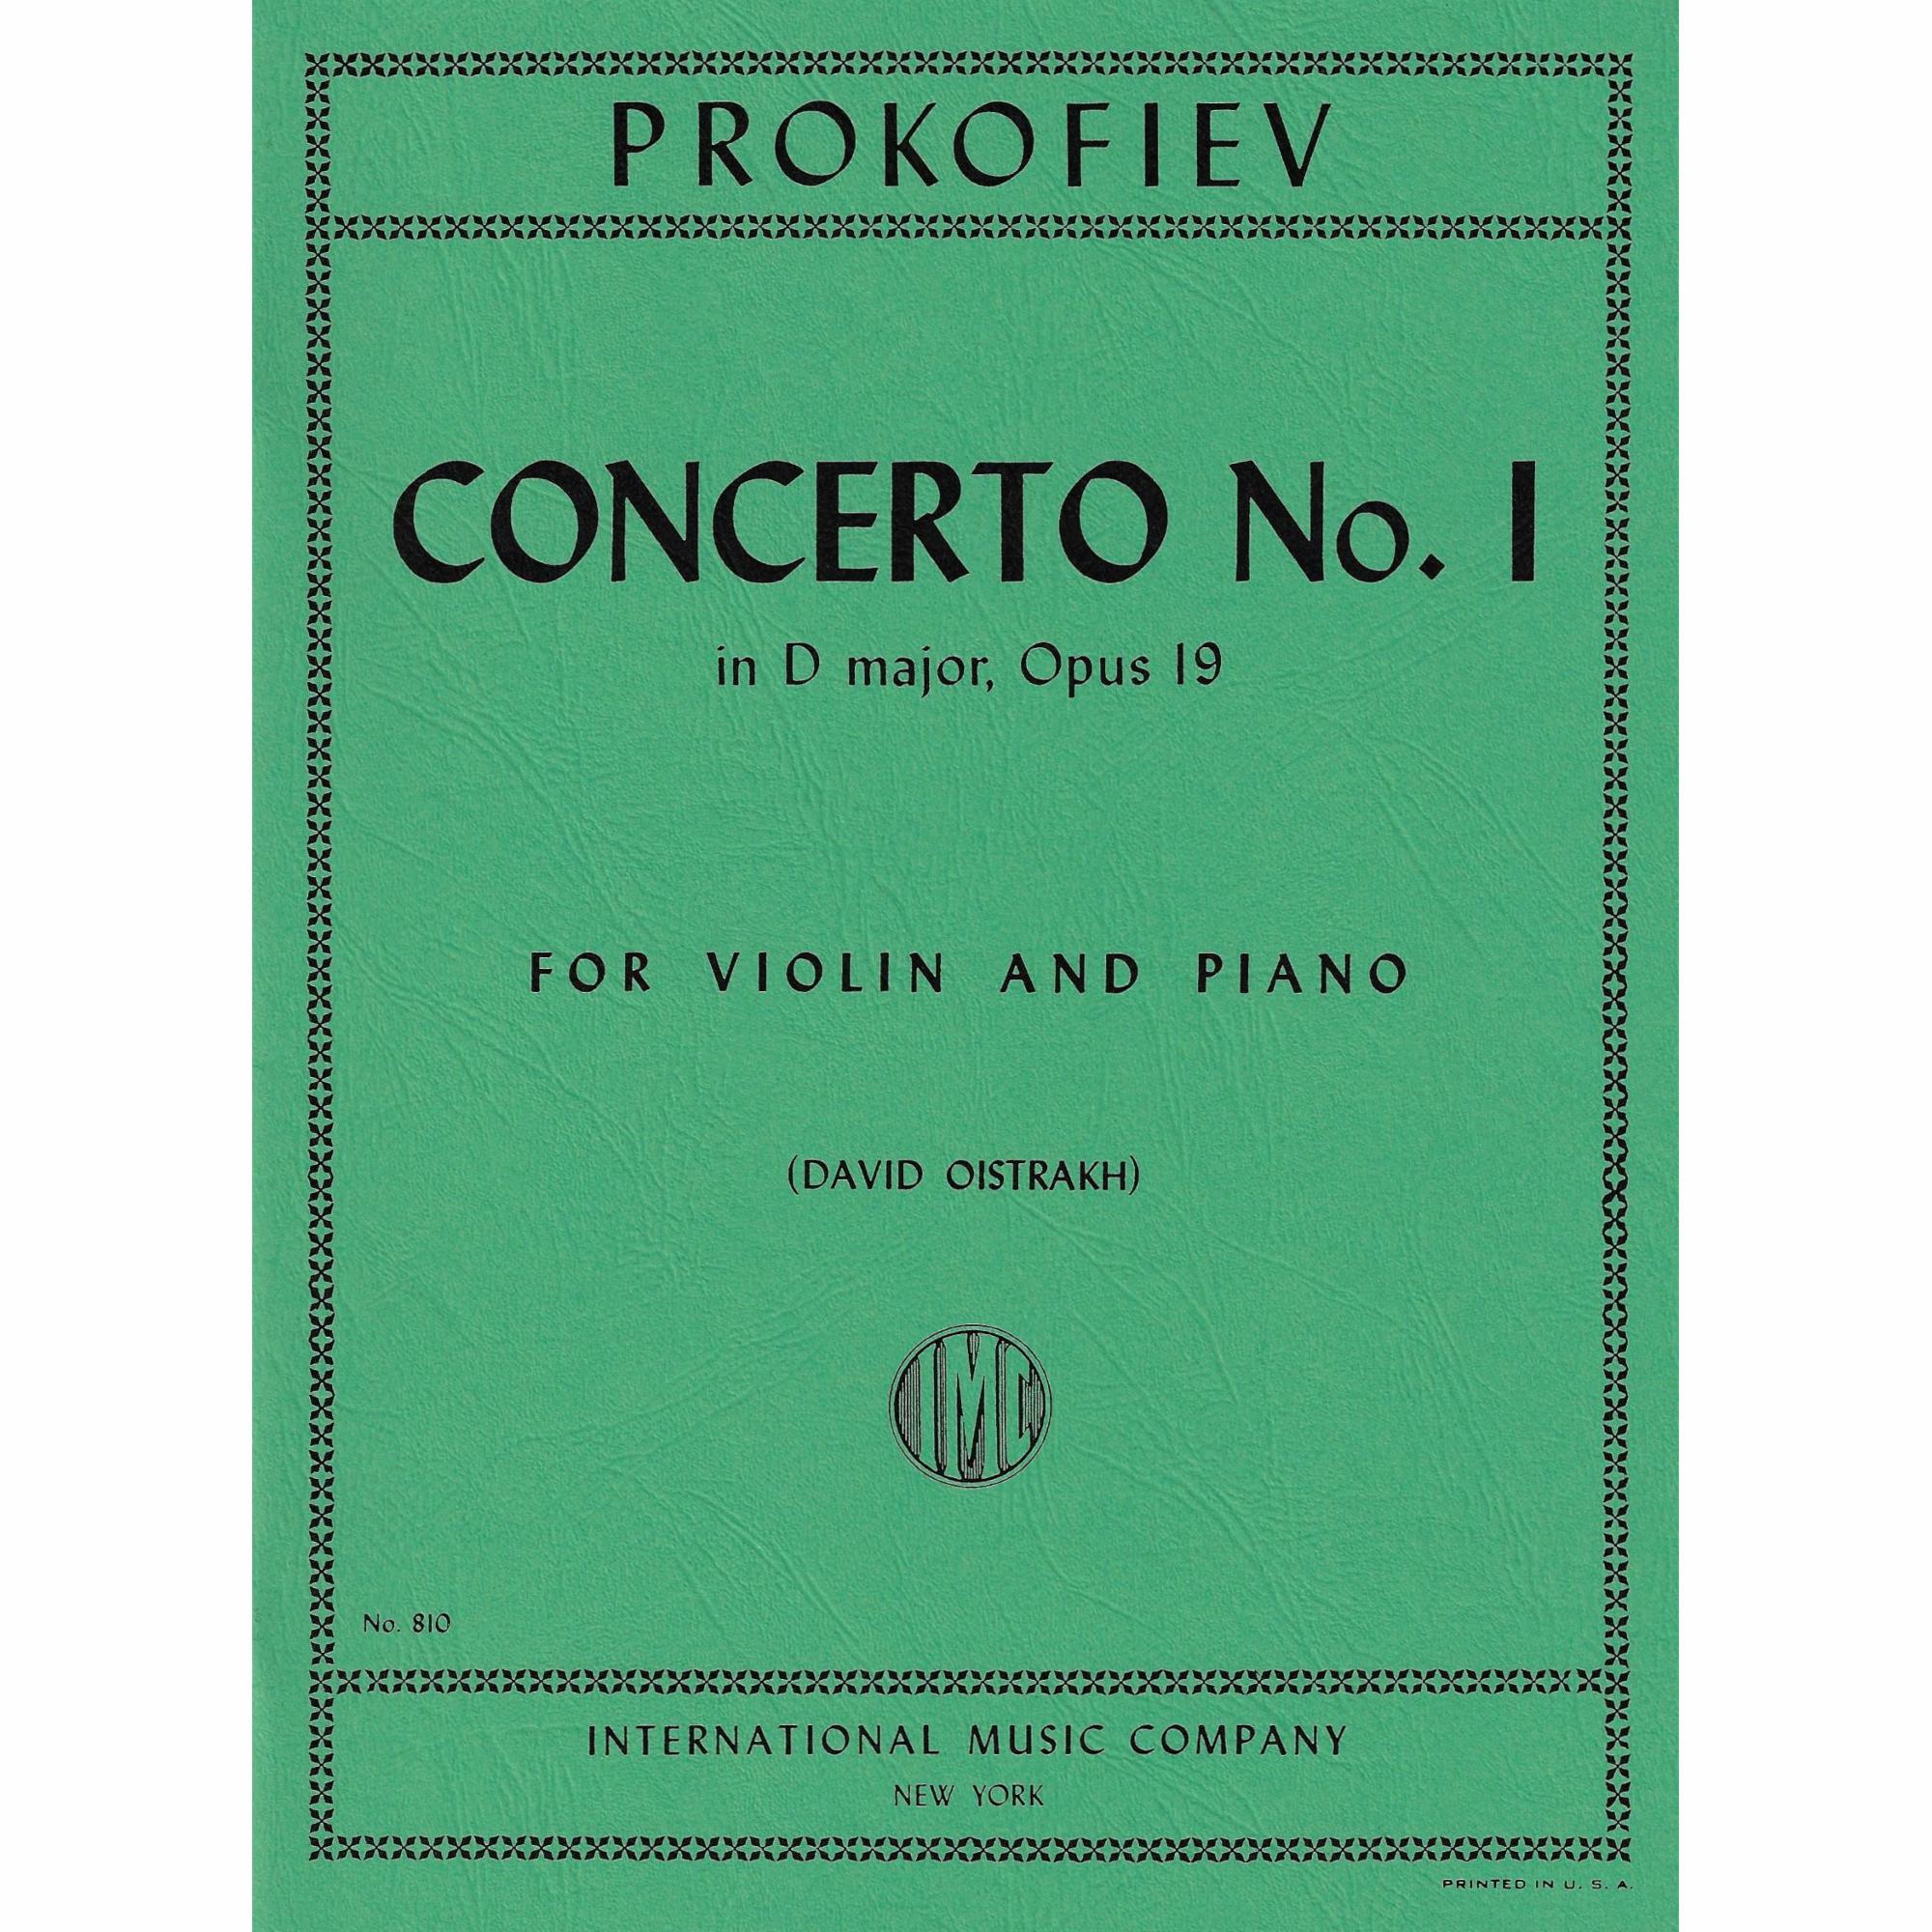 Prokofiev -- Concerto No. 1 in D Major, Op. 19 for Violin and Piano